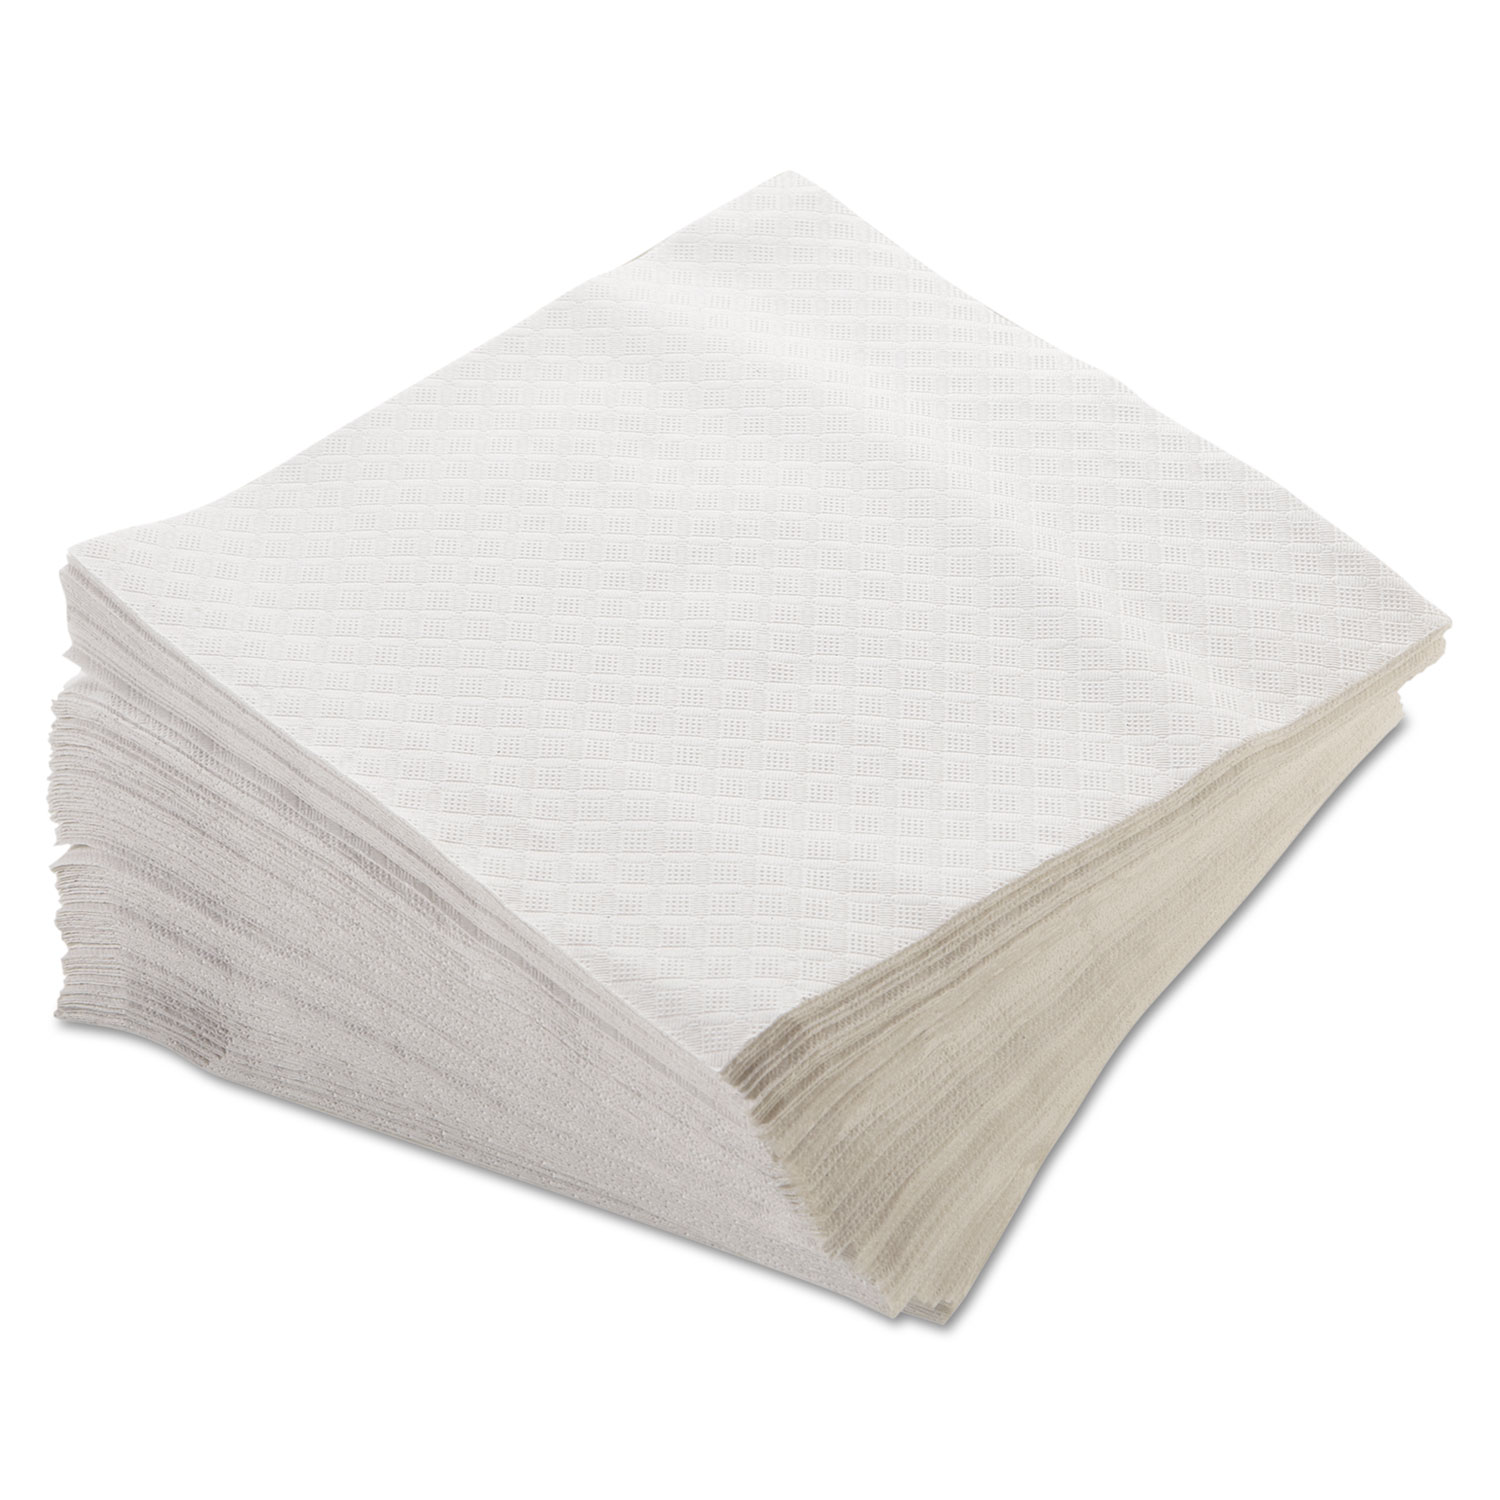  Morcon Tissue MOR 16250 Morsoft 1/4 Fold Lunch Napkins, 1-Ply, 15 x 17, White, 250/Pack, 16 Packs/Carton (MOR16250) 